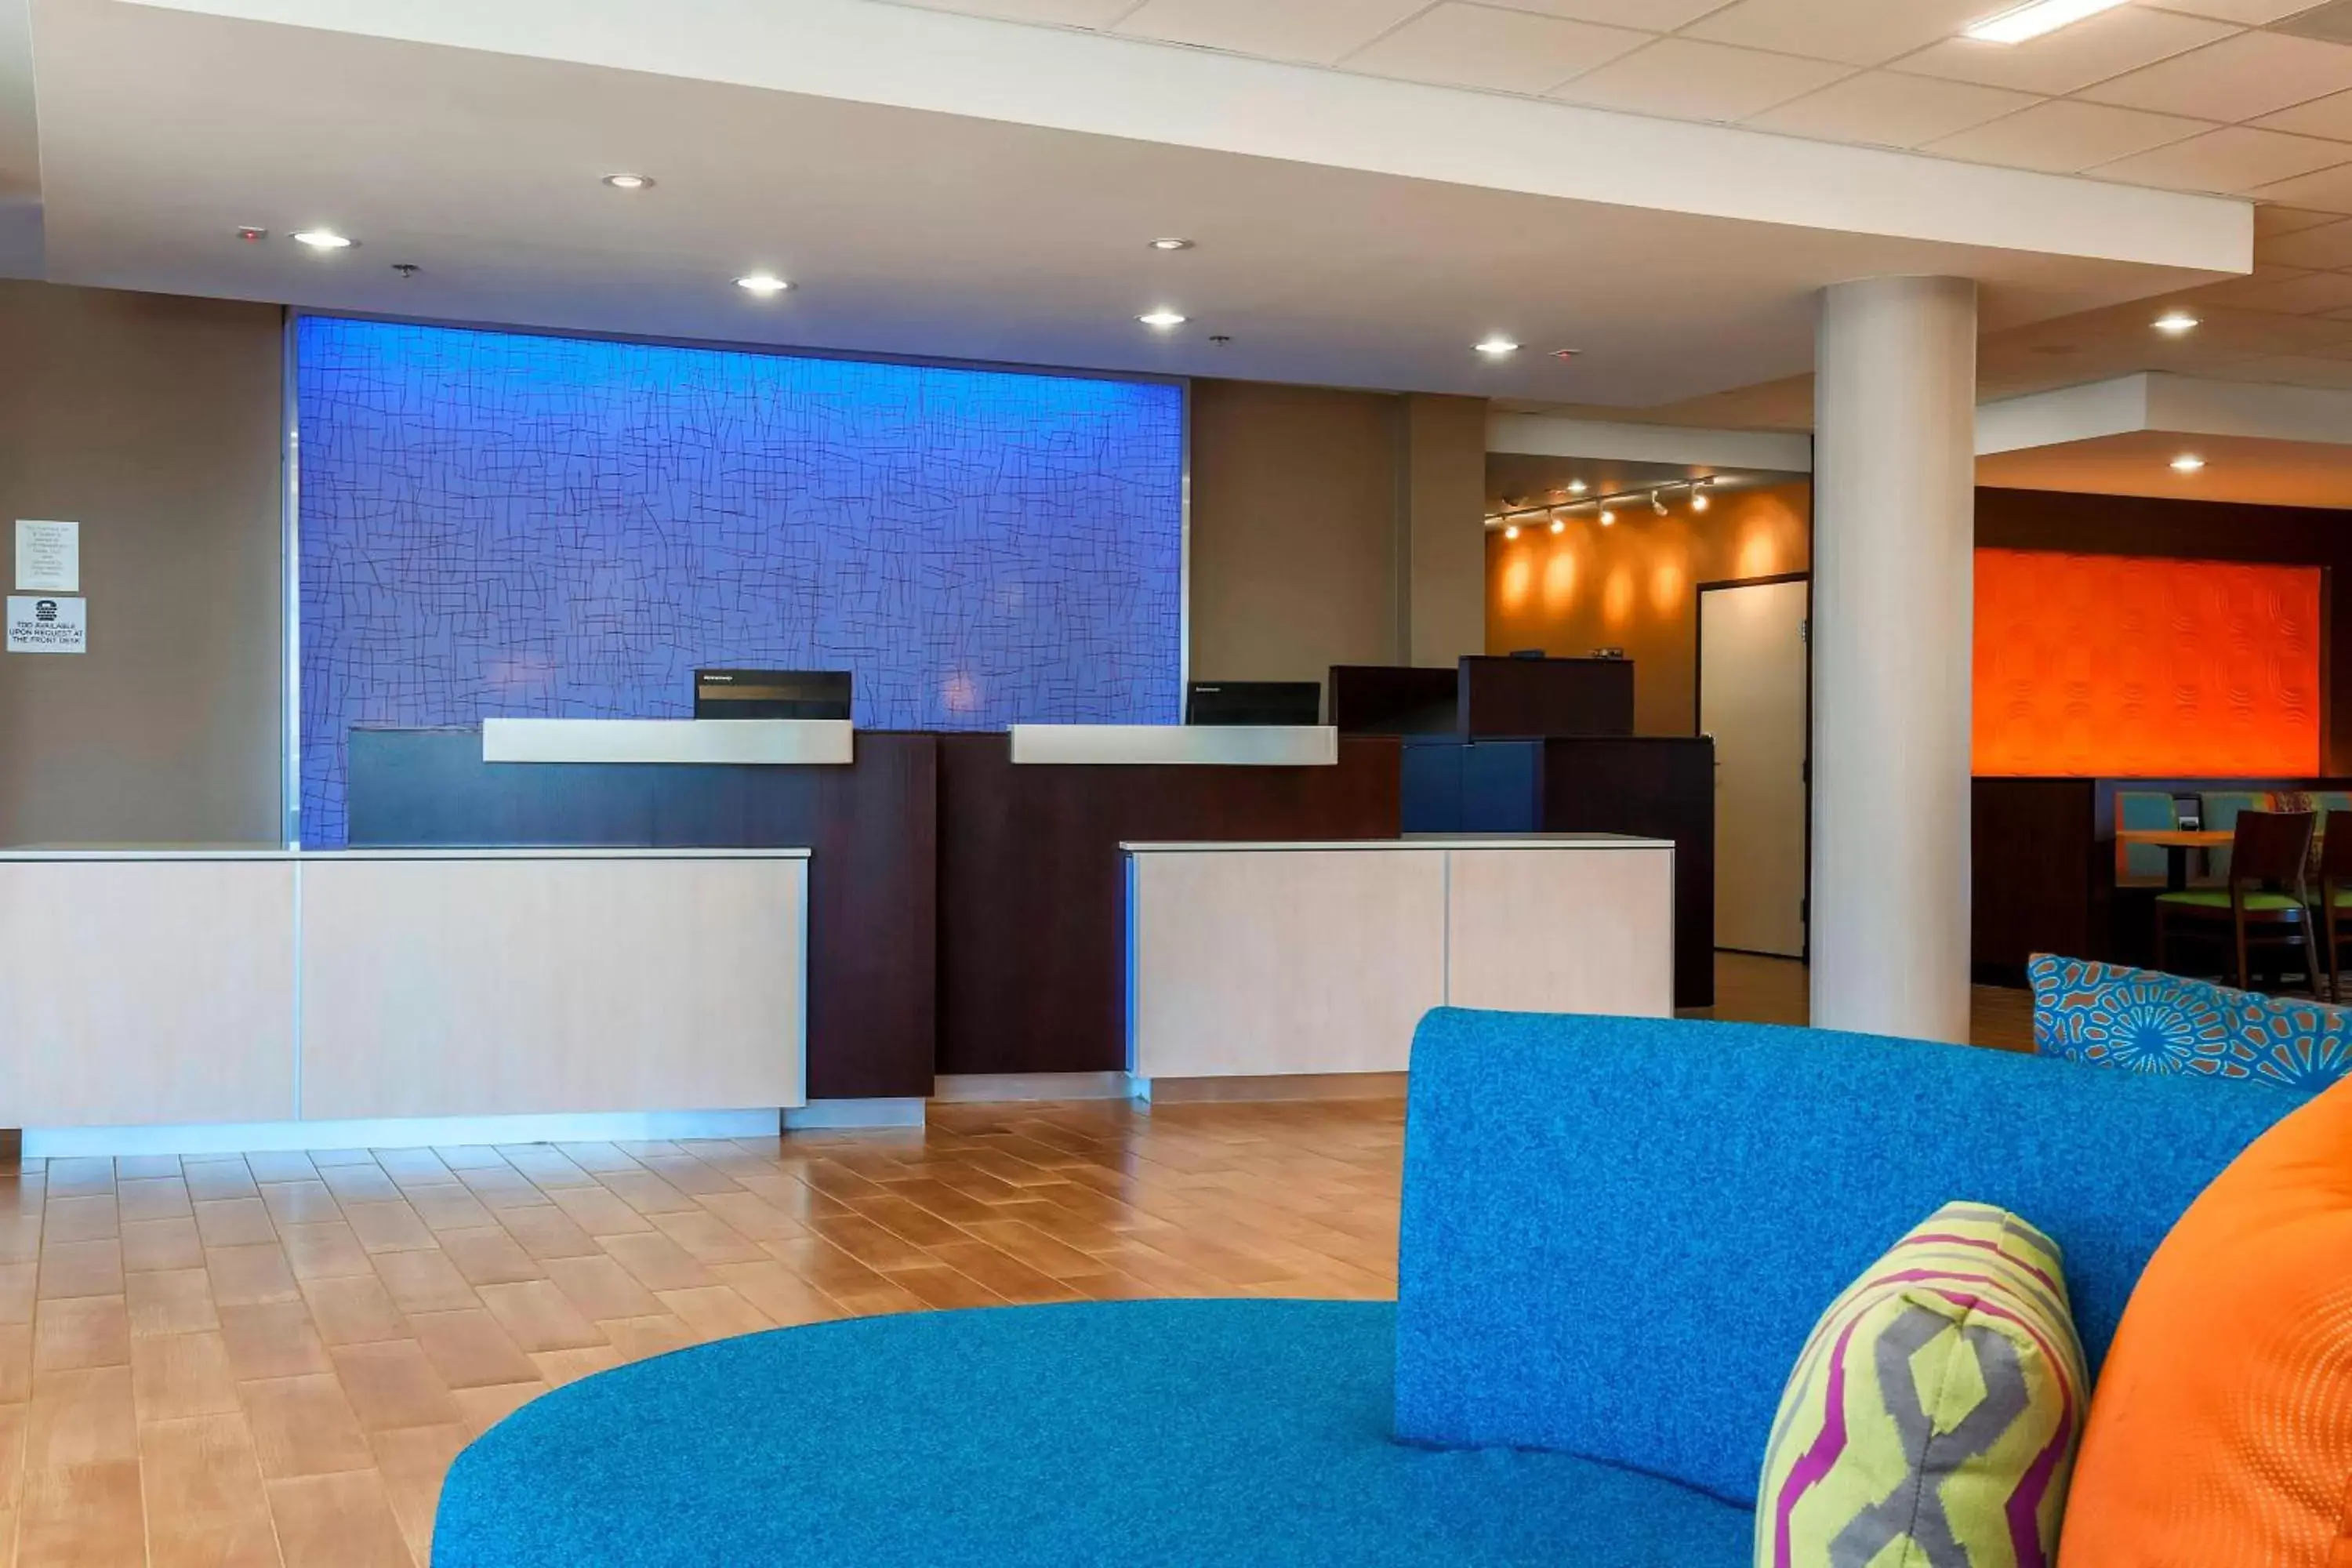 Lobby or reception, Lobby/Reception in Fairfield Inn & Suites by Marriott Pleasanton